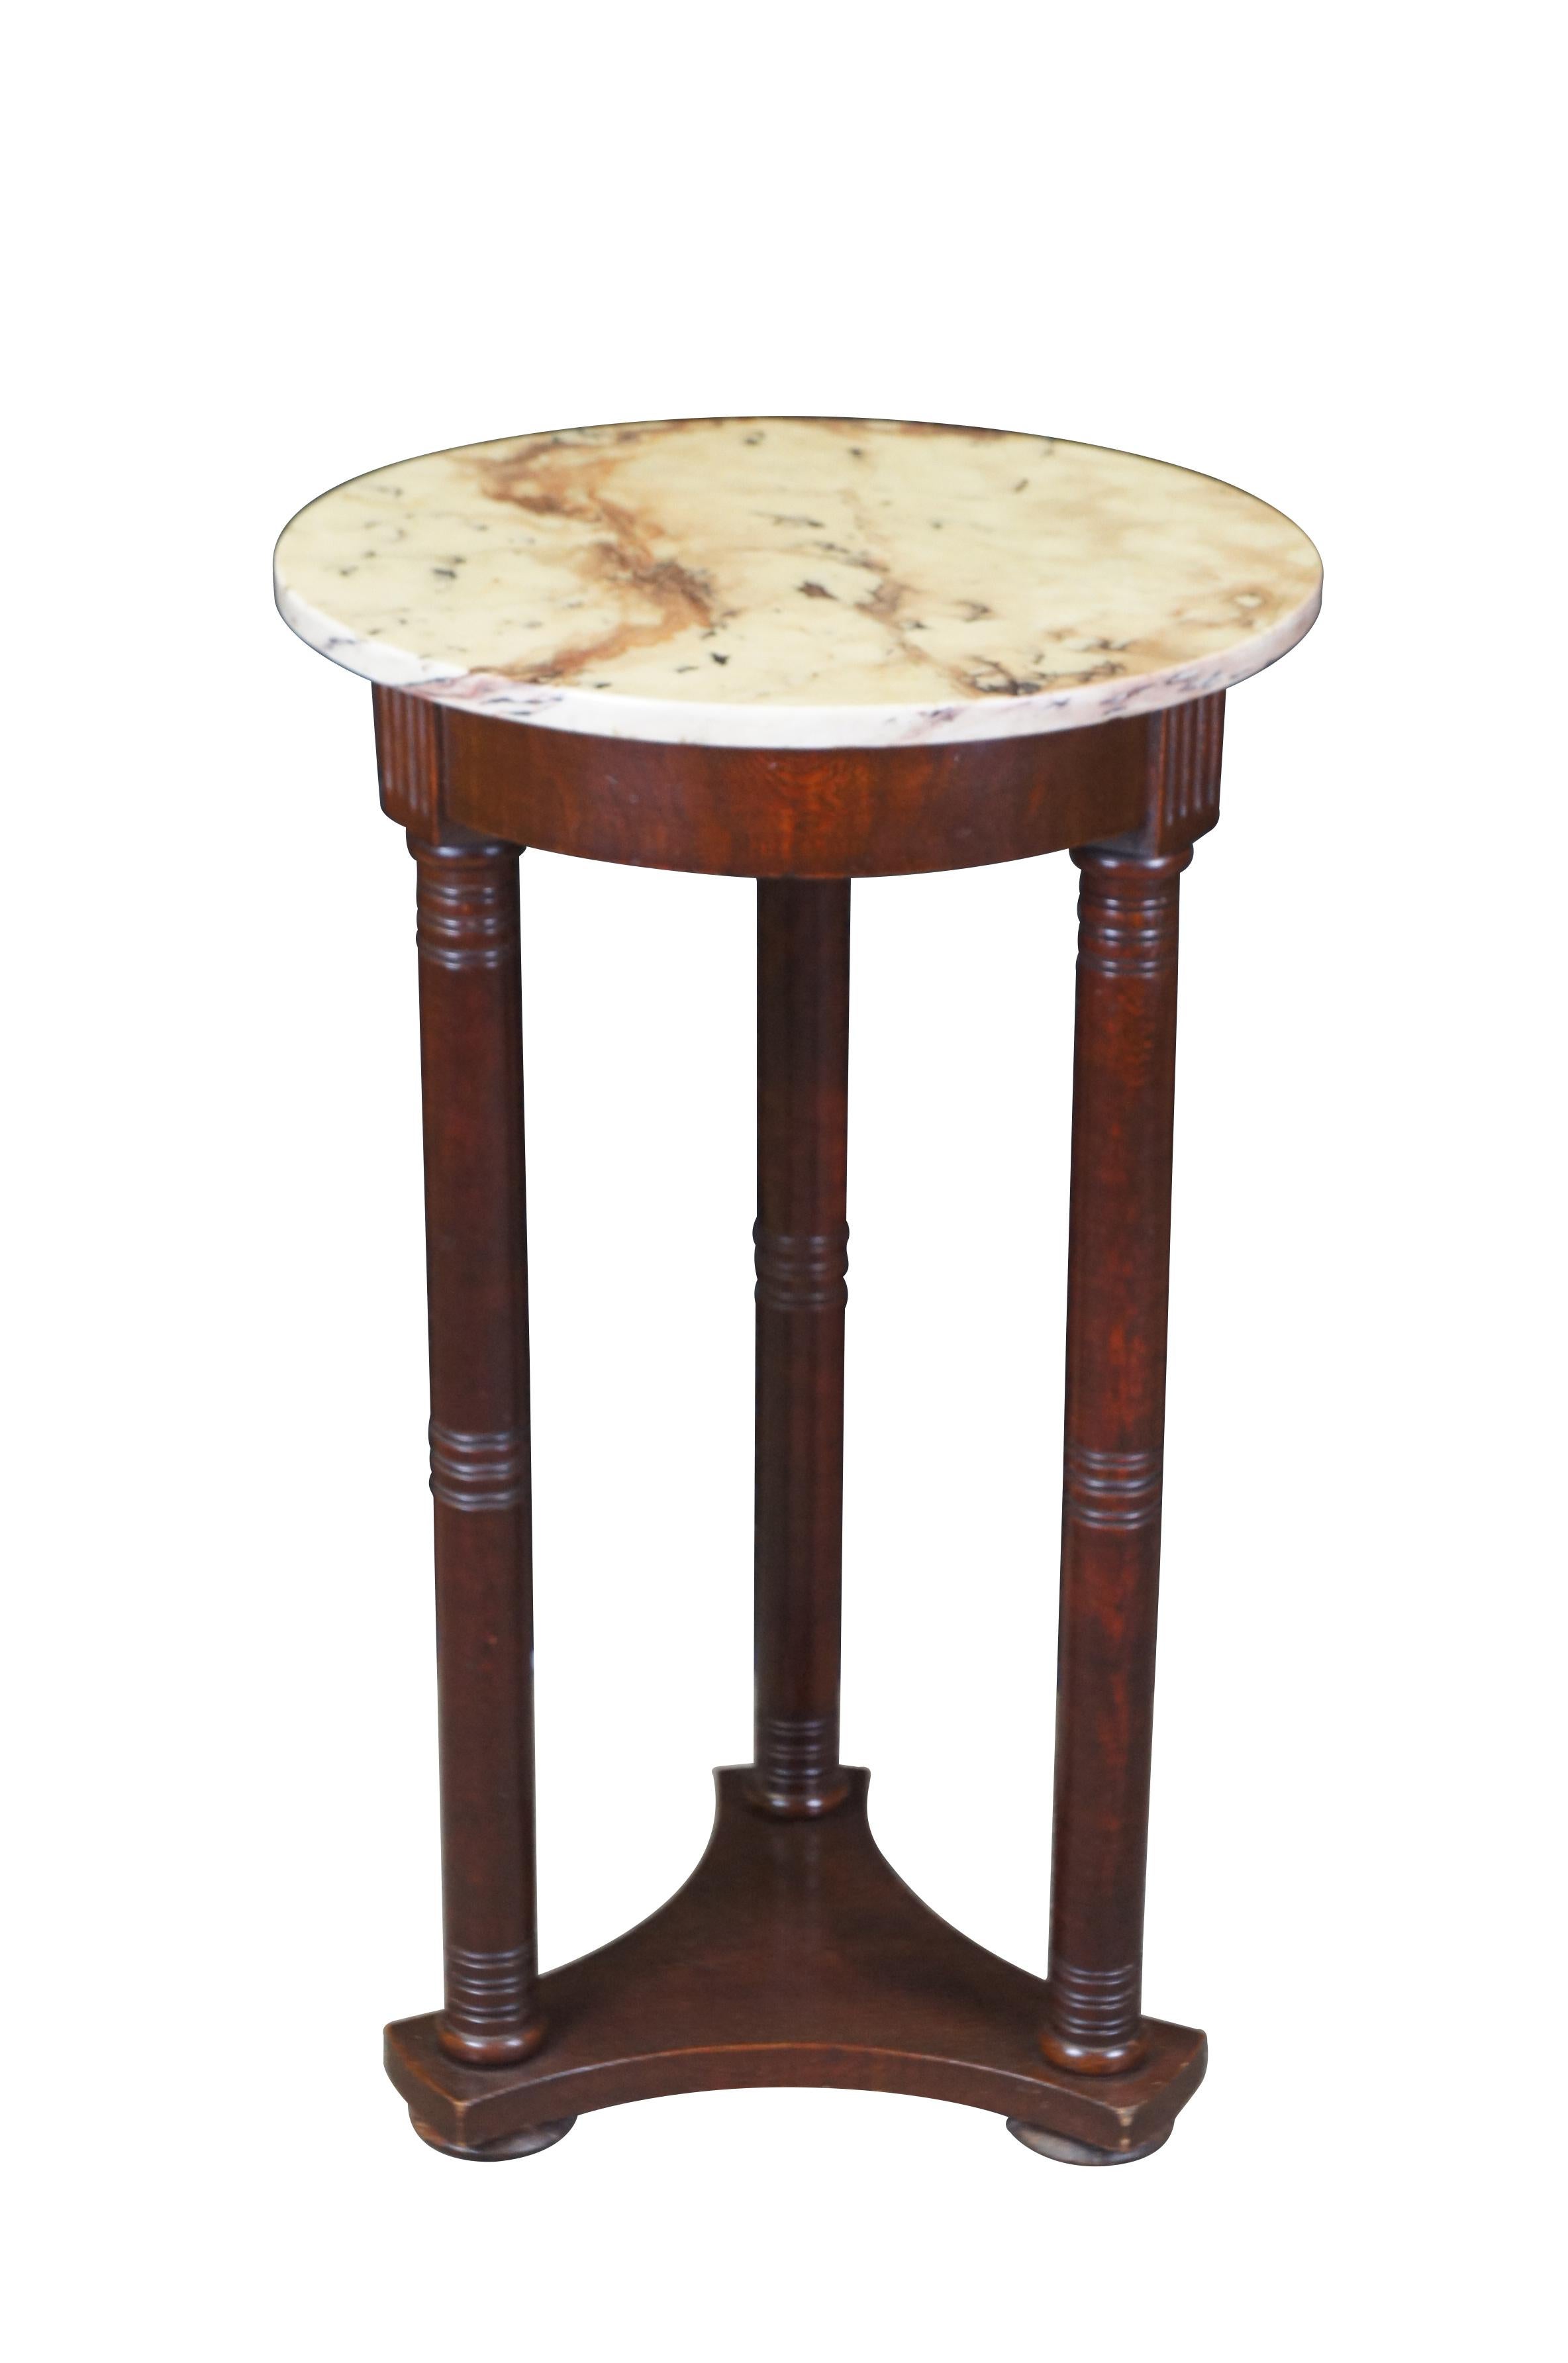 Vintage English Regency / George III style pedestal table.  Fabriqué en acajou avec une base triangulaire supportant des colonnes tournées et un plateau rond en marbre.

Dimensions :
17.75 